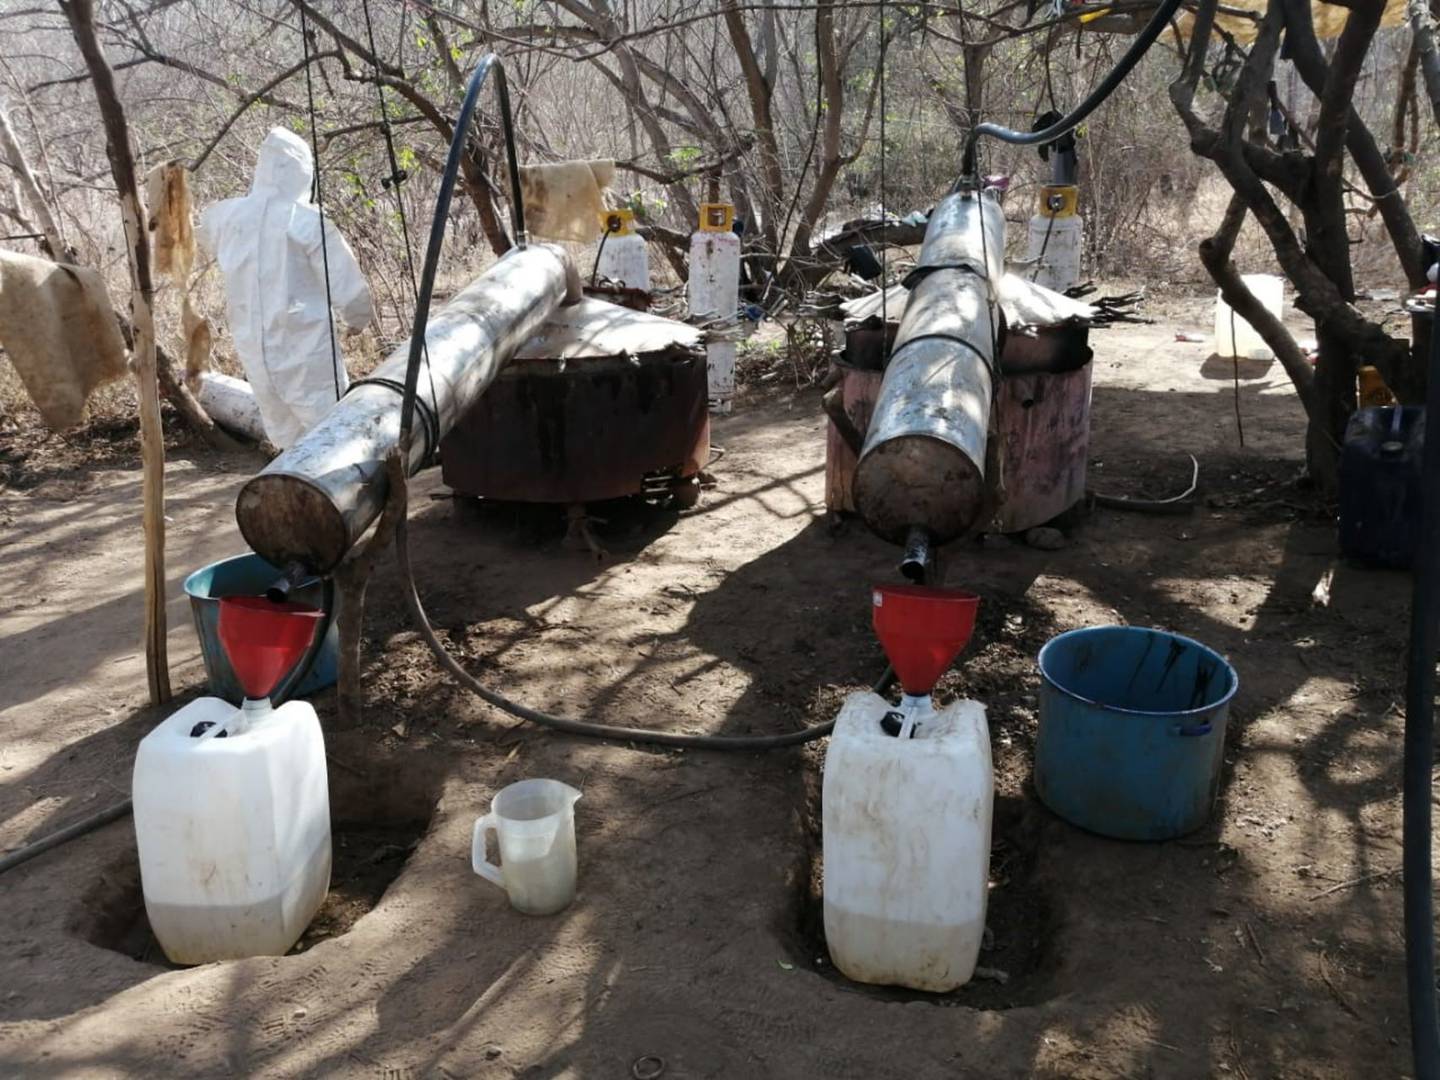 Ejército Mexicano asegura más de dos mil litros de posible metanfetamina en siete laboratorios clandestinos en el estado de Sinaloa.